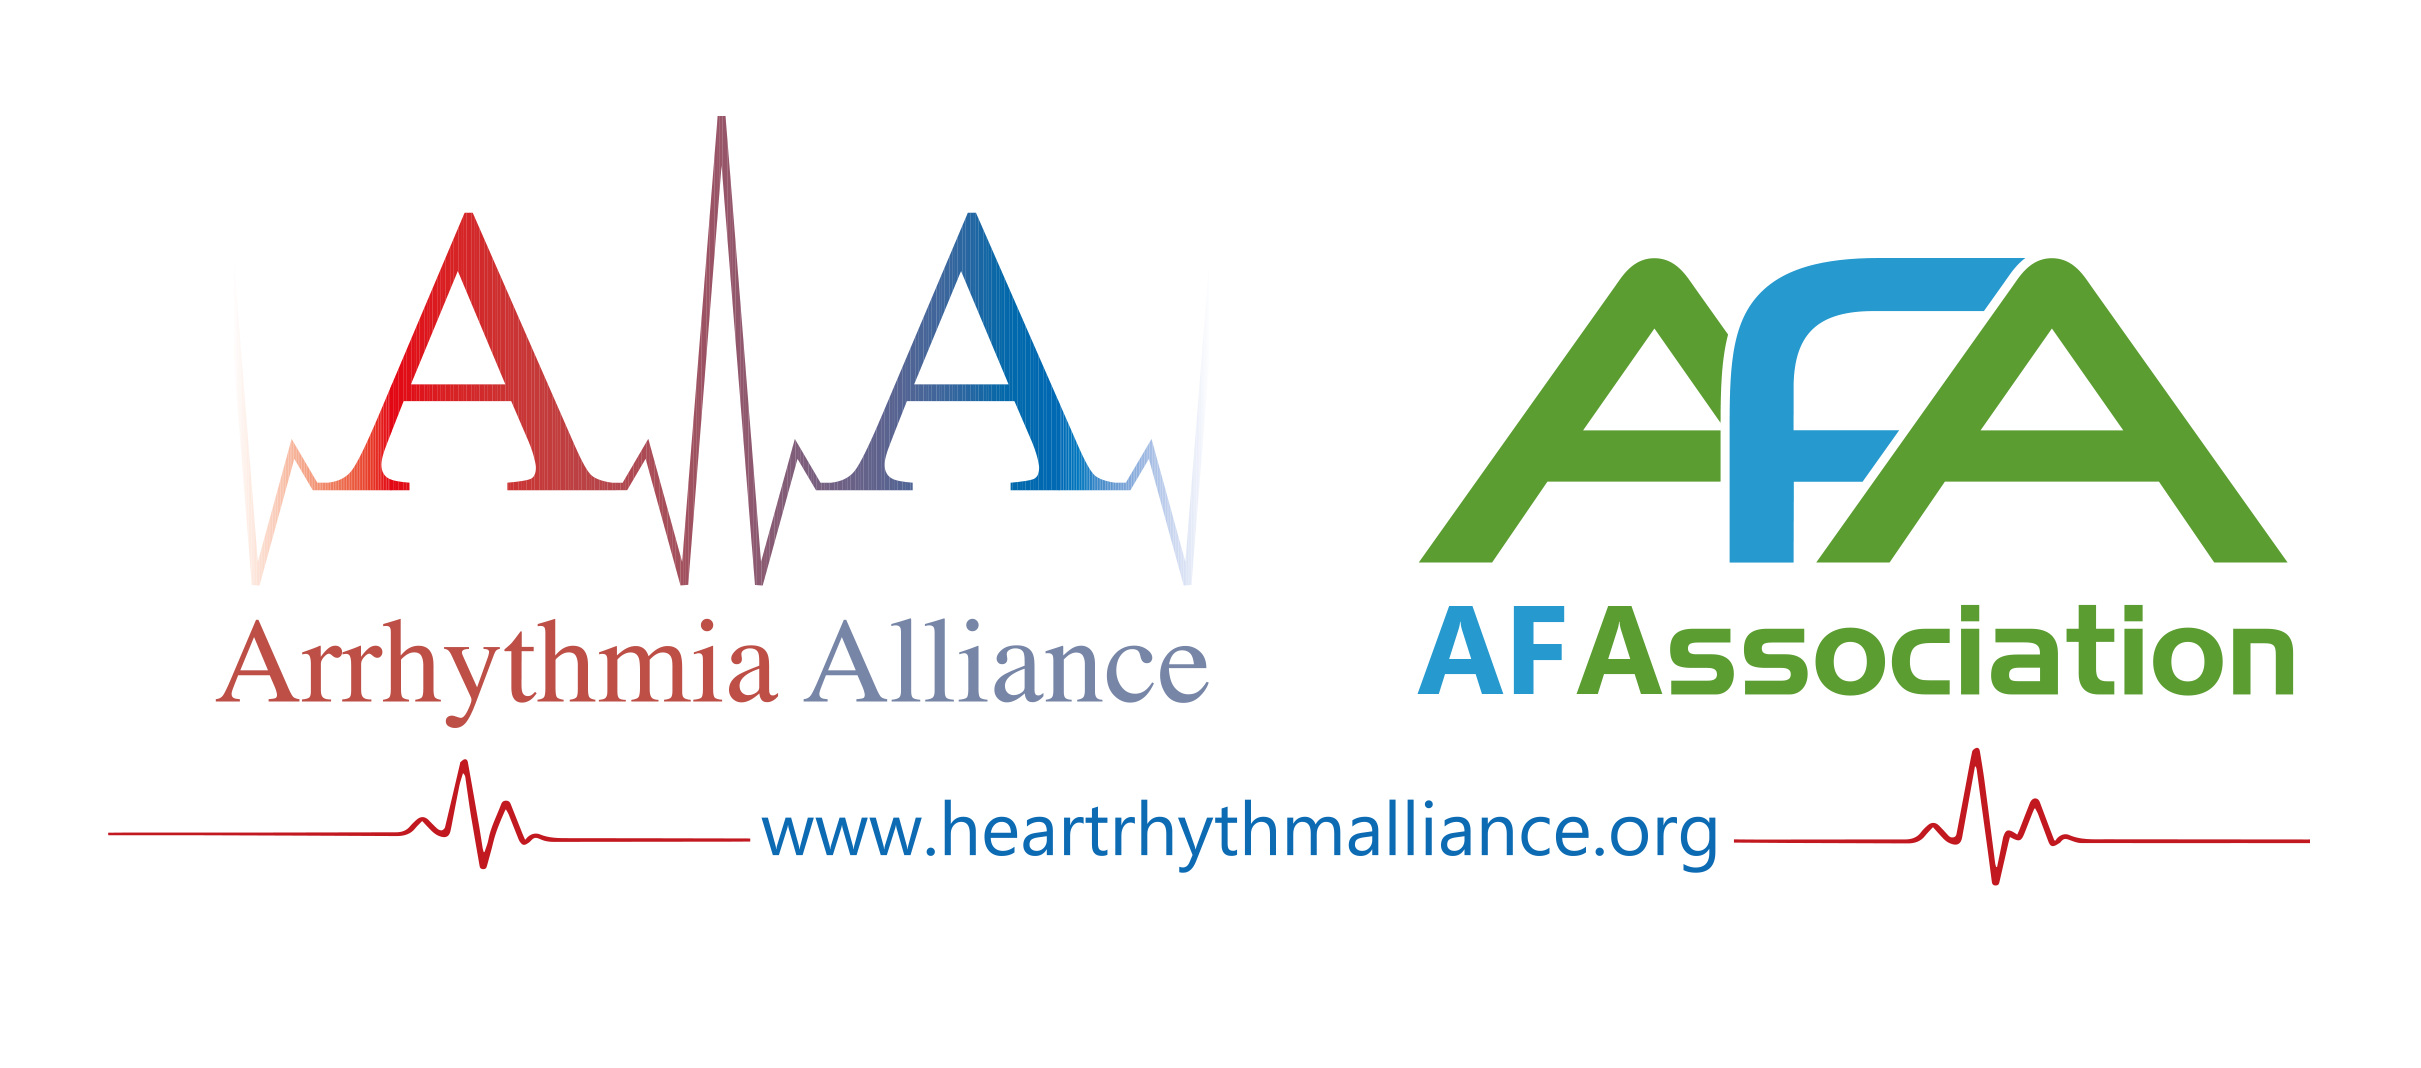 arrhythmia alliance